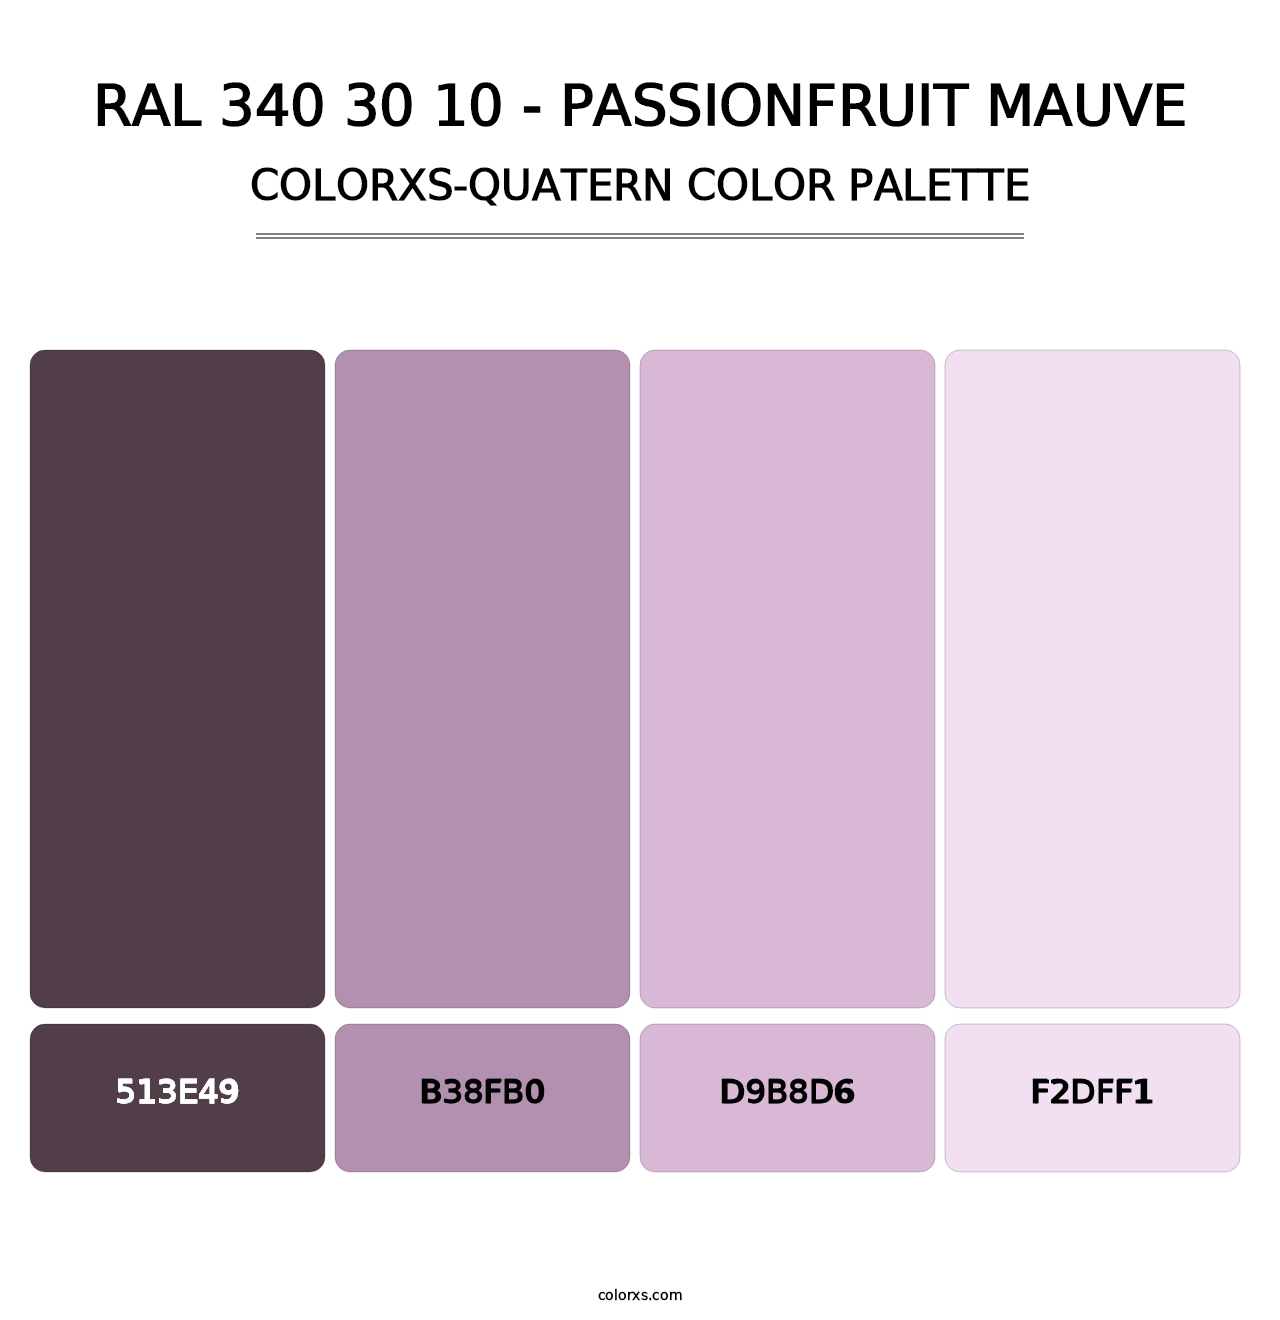 RAL 340 30 10 - Passionfruit Mauve - Colorxs Quatern Palette